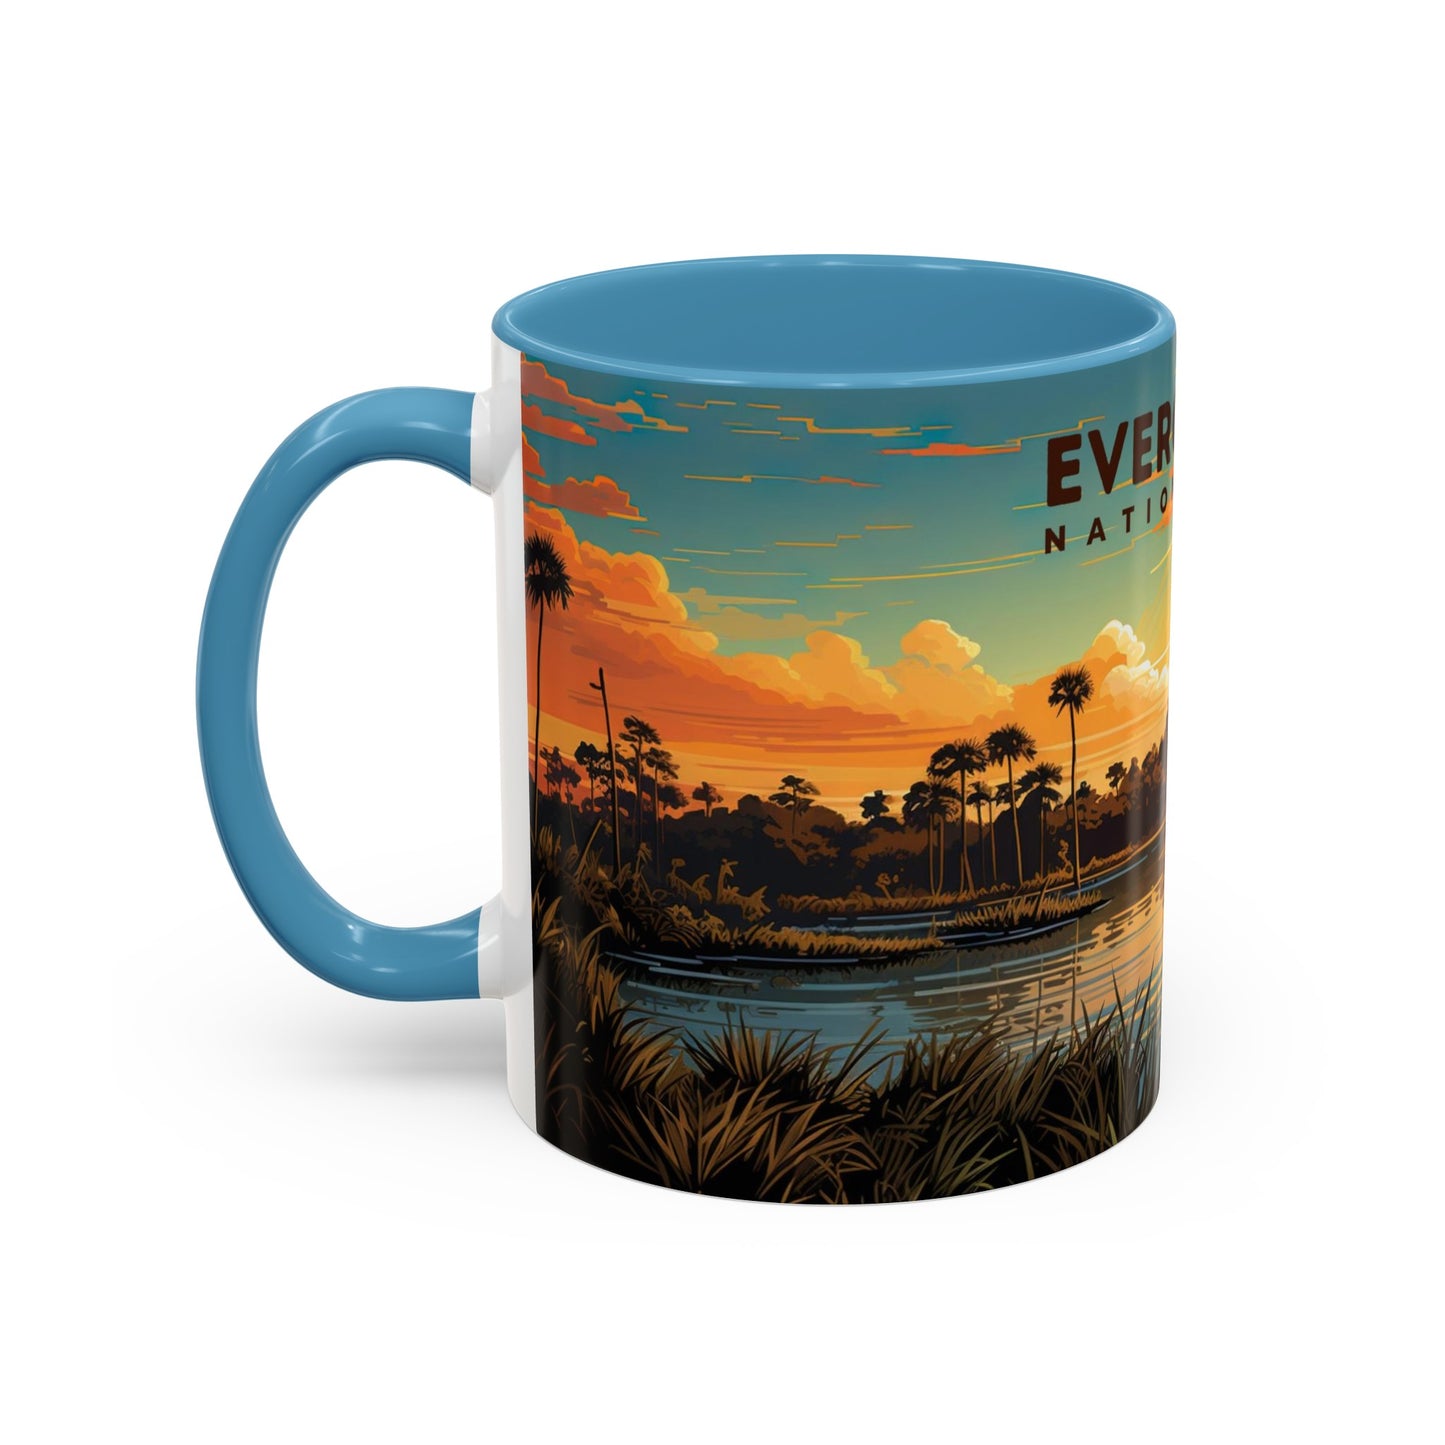 Everglades National Park Mug | Accent Coffee Mug (11, 15oz)